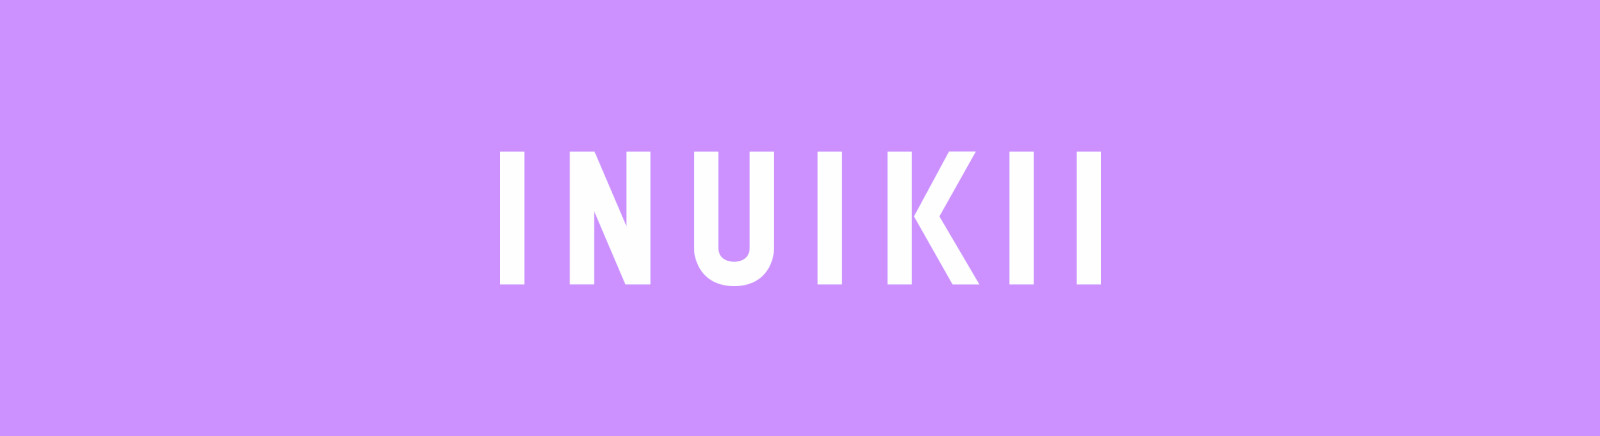 Prange: INUIKII/IKKII Moon Boots für Damen online shoppen